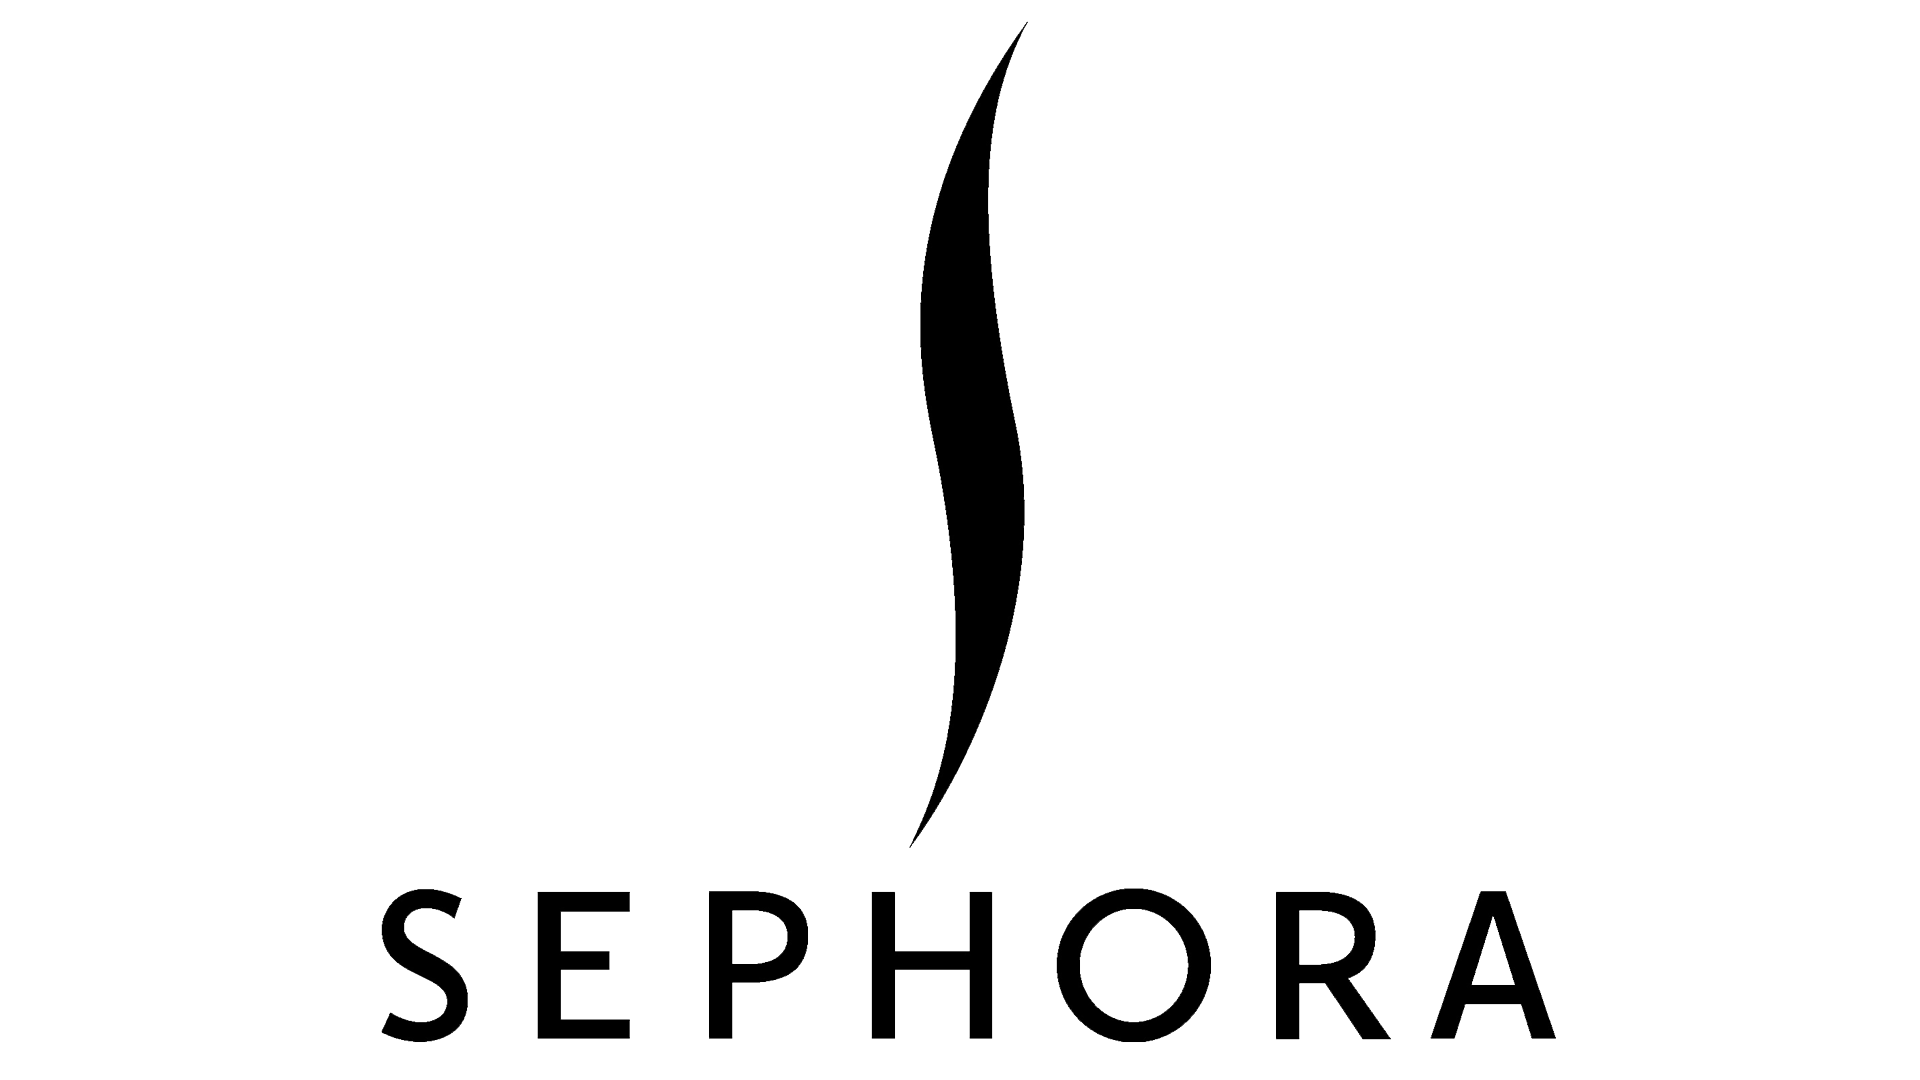 Sephora using automatic capsulegel hardness tester in North America